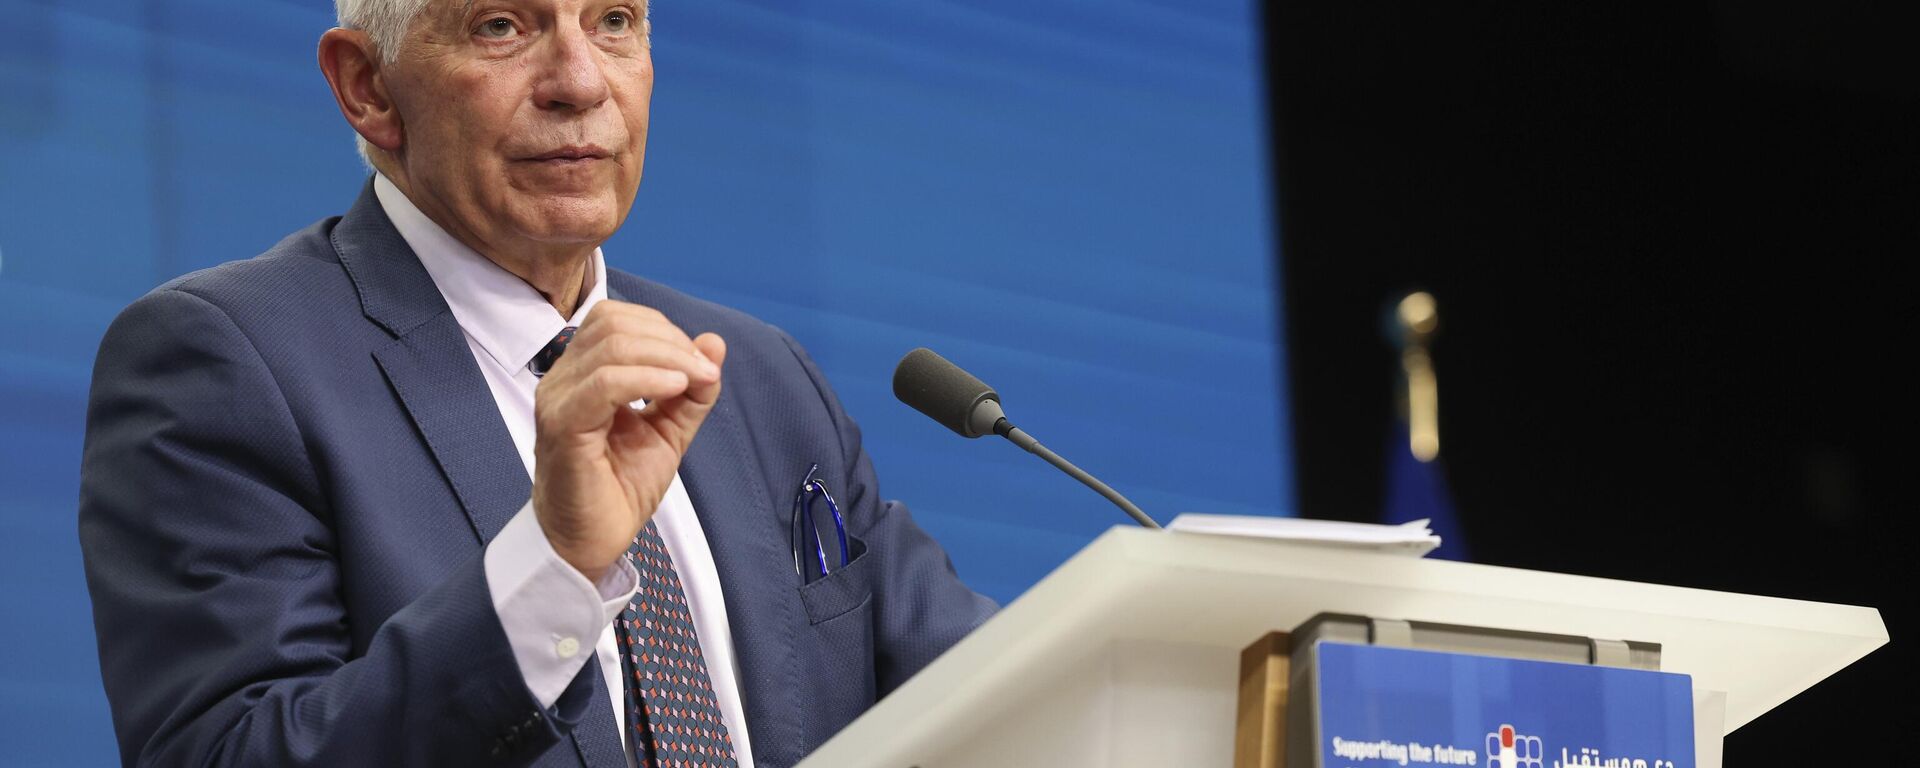 Josep Borrell, chefe das Relações Exteriores da União Europeia (UE), fala durante coletiva de imprensa sobre a Síria e o Oriente Médio no prédio do Conselho Europeu em Bruxelas, Bélgica, 15 de junho de 2023 - Sputnik Brasil, 1920, 15.06.2023